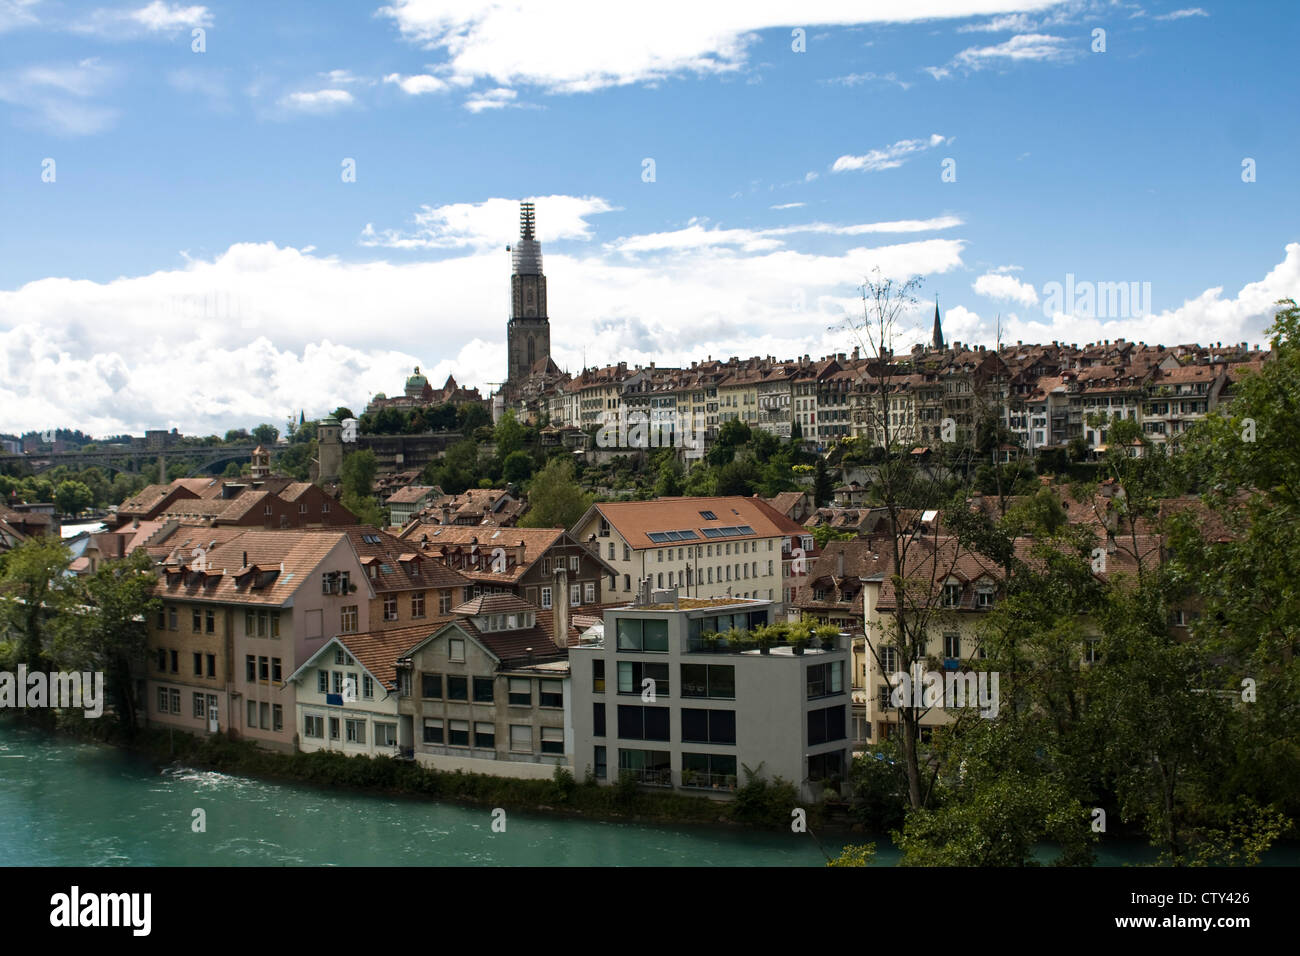 Bern, Swiss city view Stock Photo